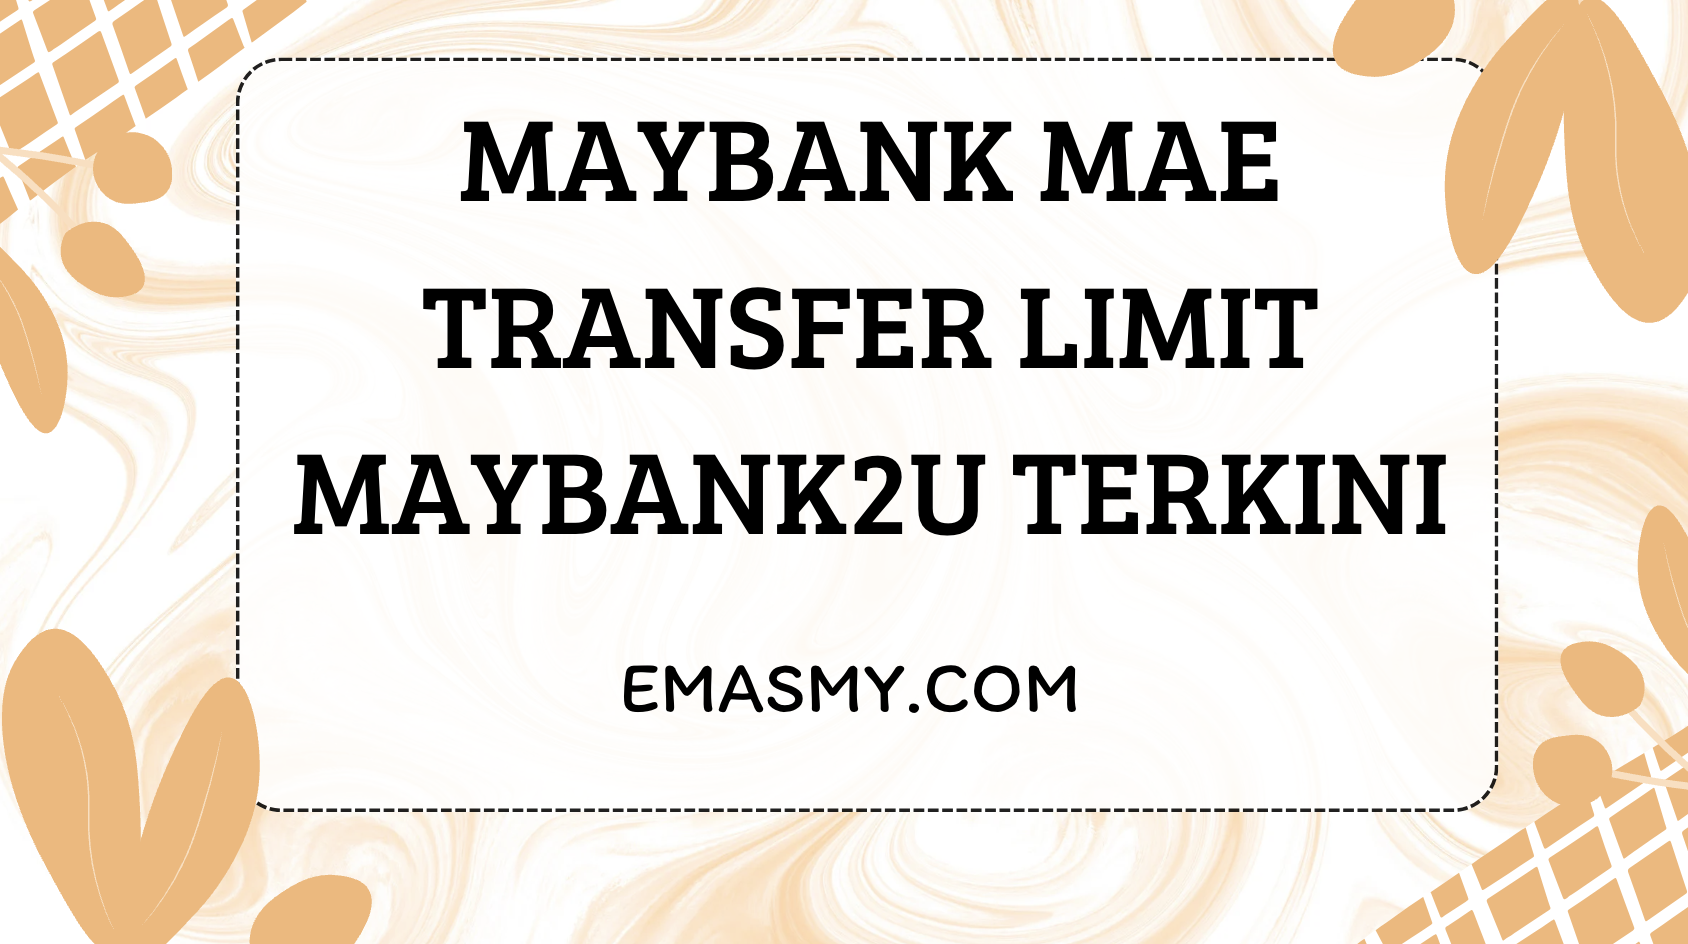 Maybank MAE Transfer Limit Maybank2u Terkini